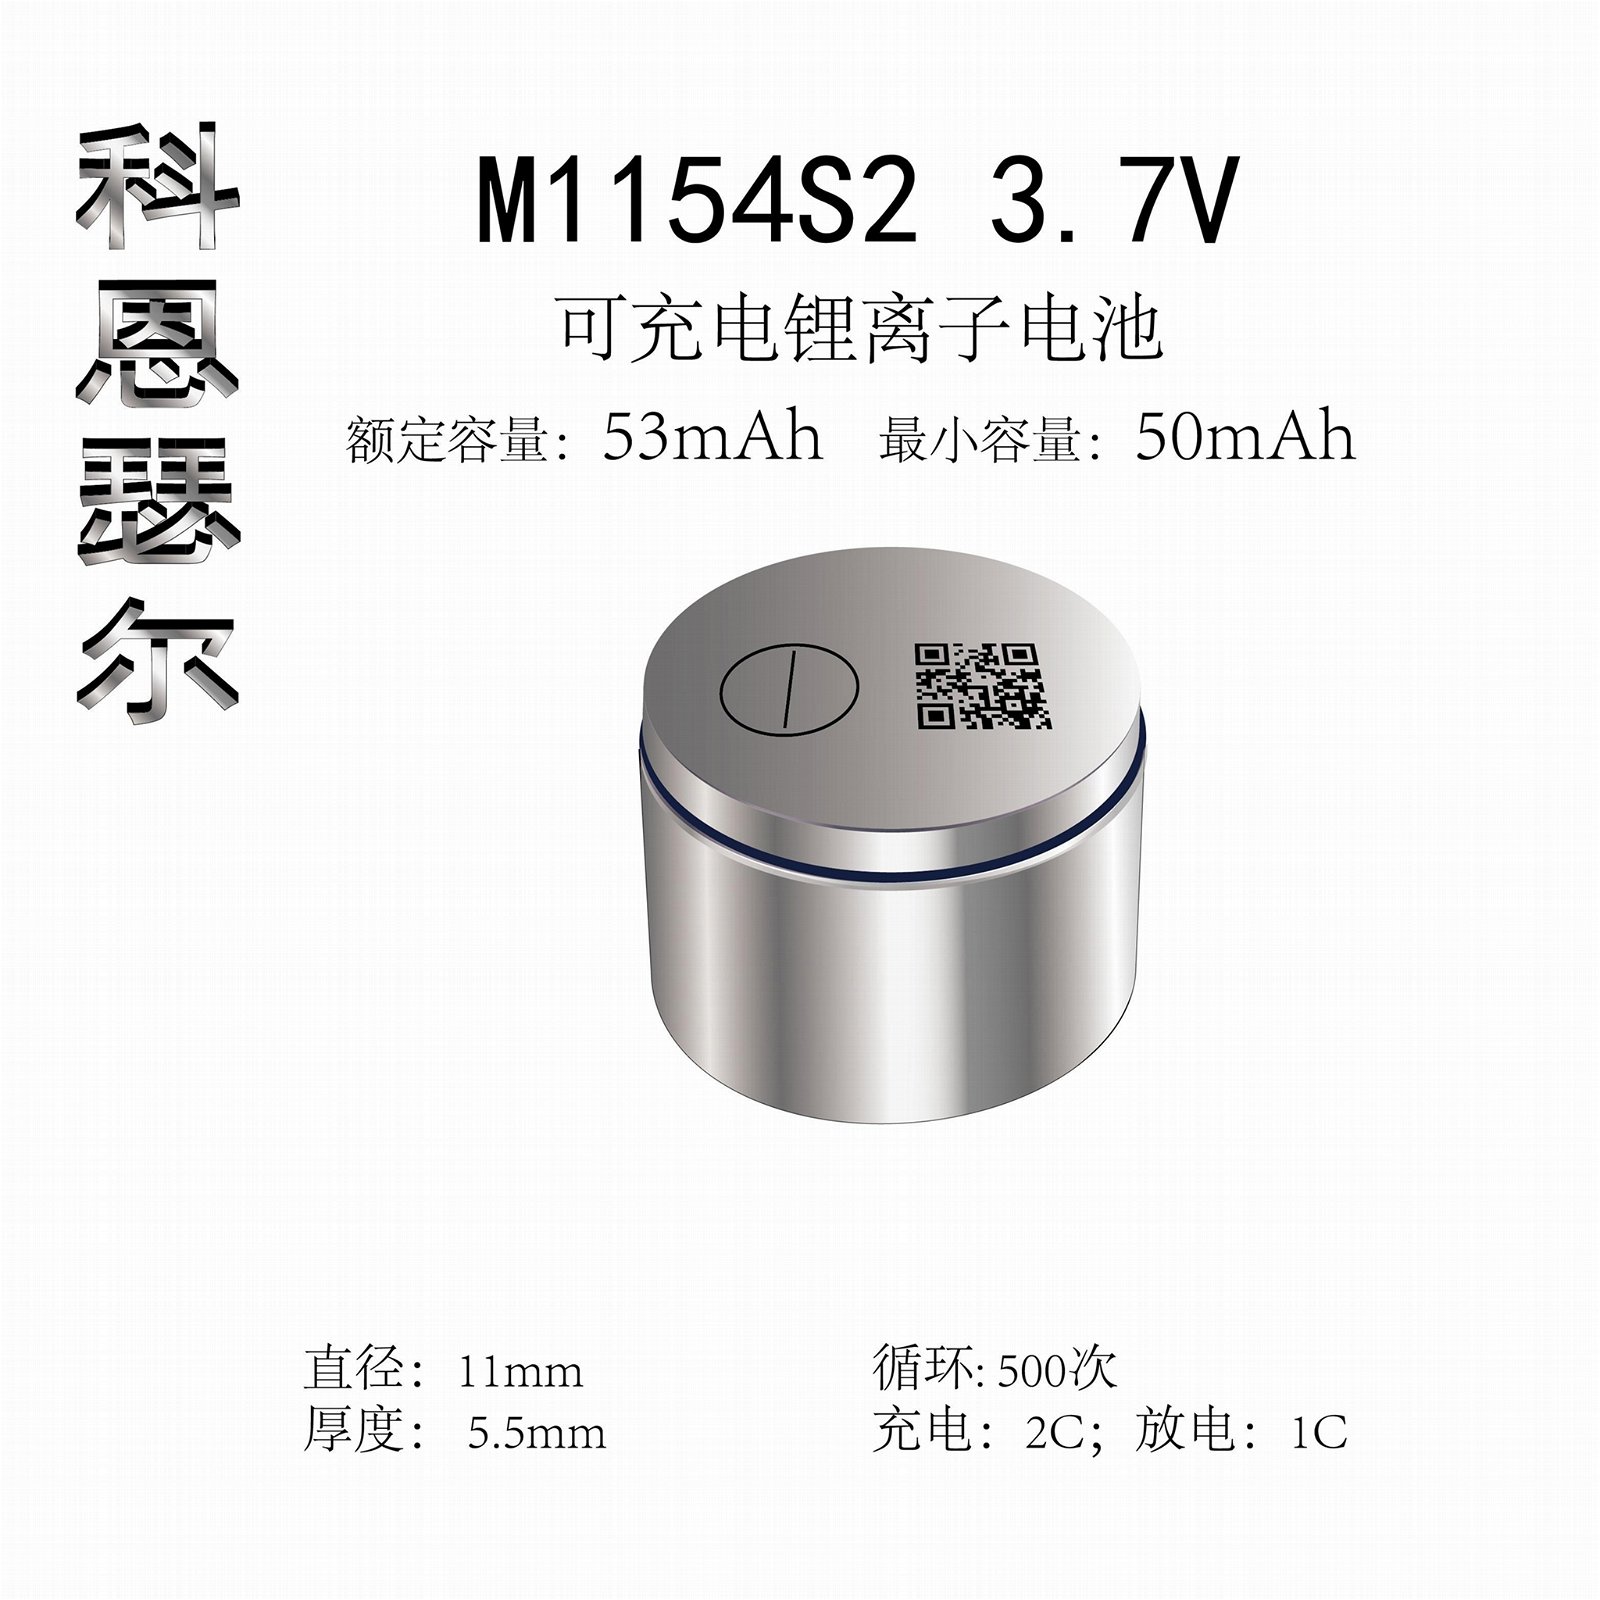 M1154 3.7V 53mAh TWS無線耳機紐扣式鋰離子電池 4